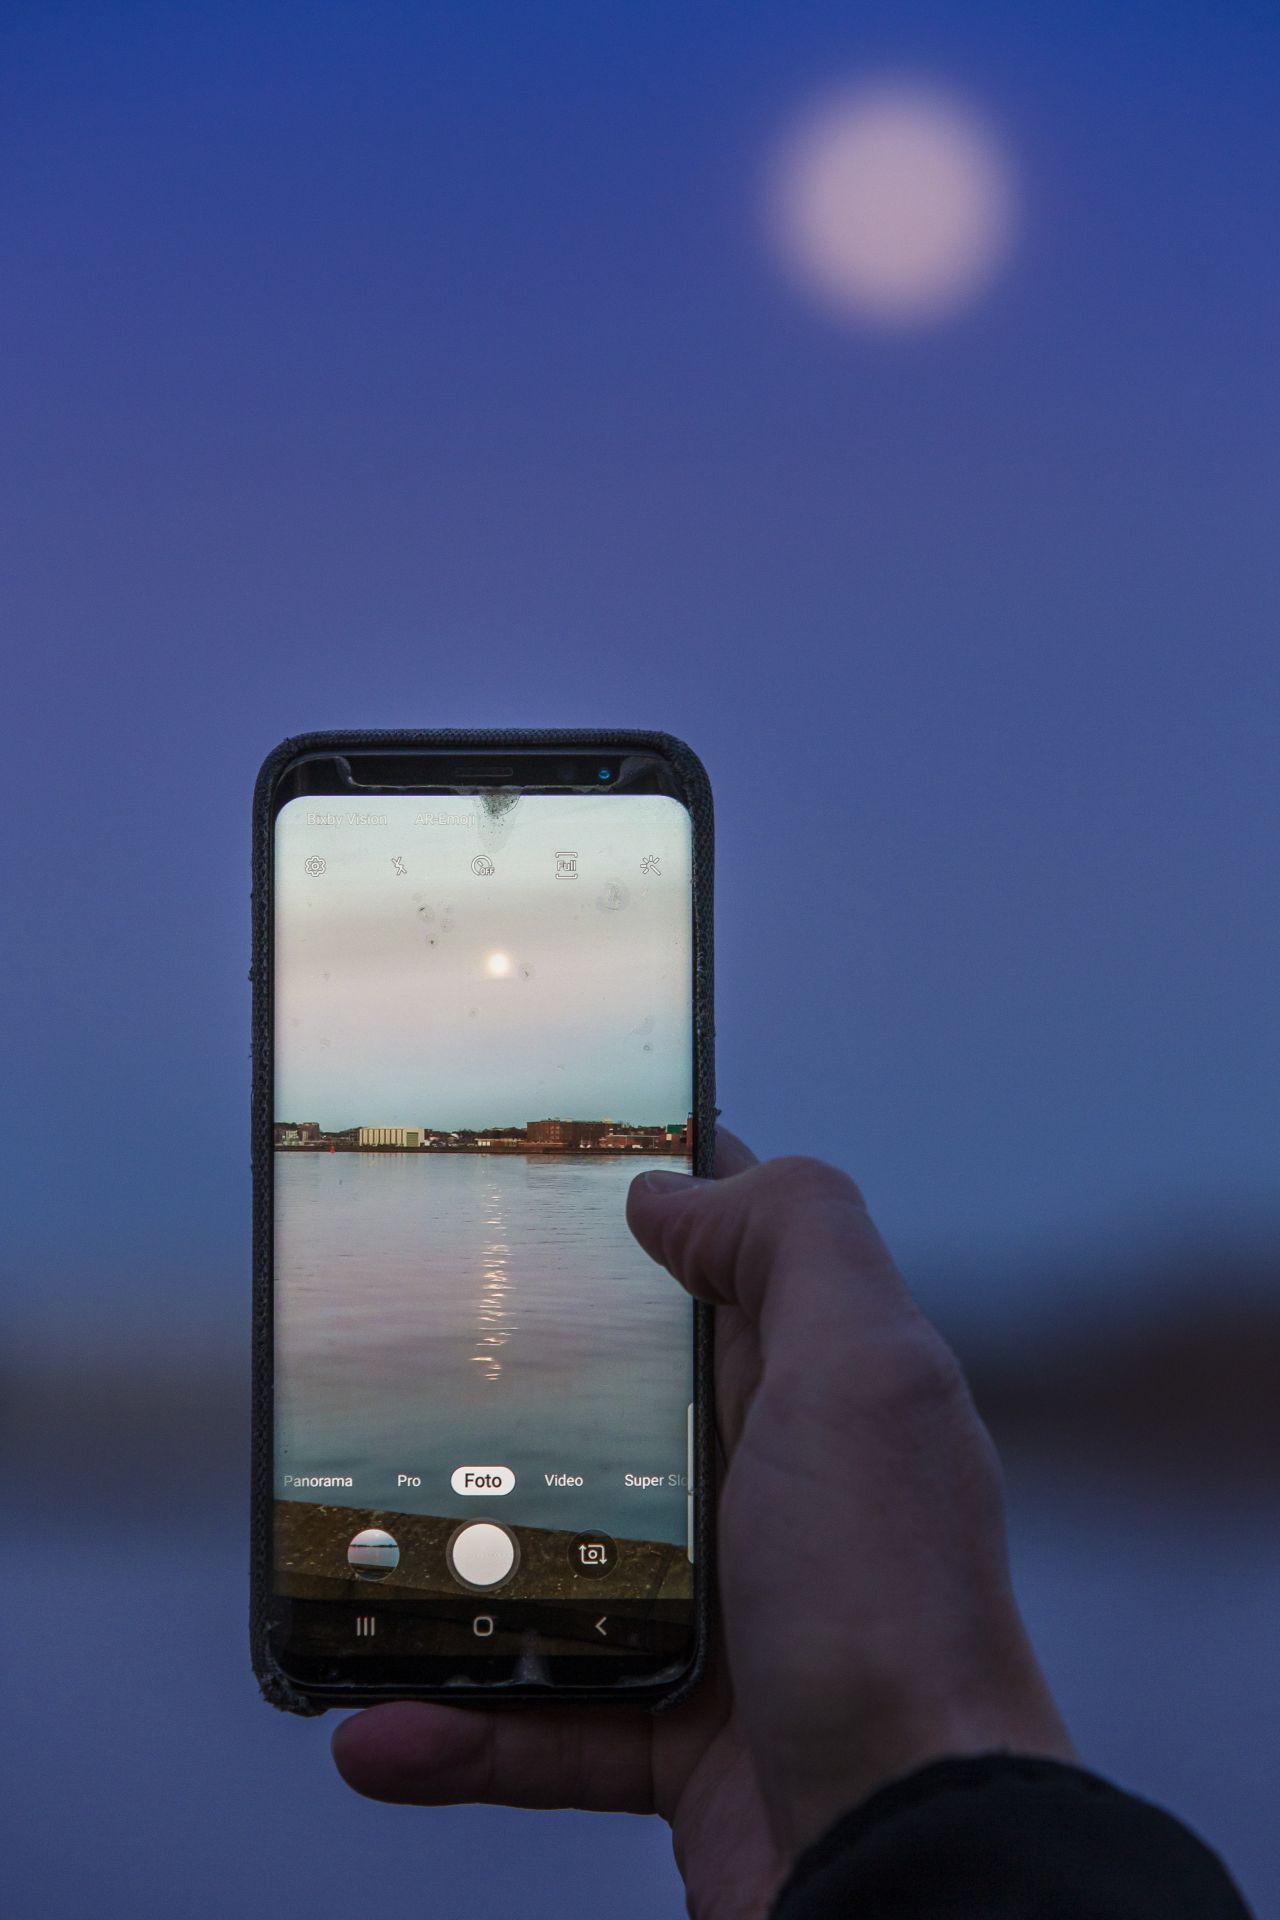 So klein und unspektakulär könnte der Mond aussehen, wenn du mit deinem Smartphone ein Foto davon machst. Um ihn in seiner vollen Pracht festzuhalten, braucht es geeignetes Equipment.